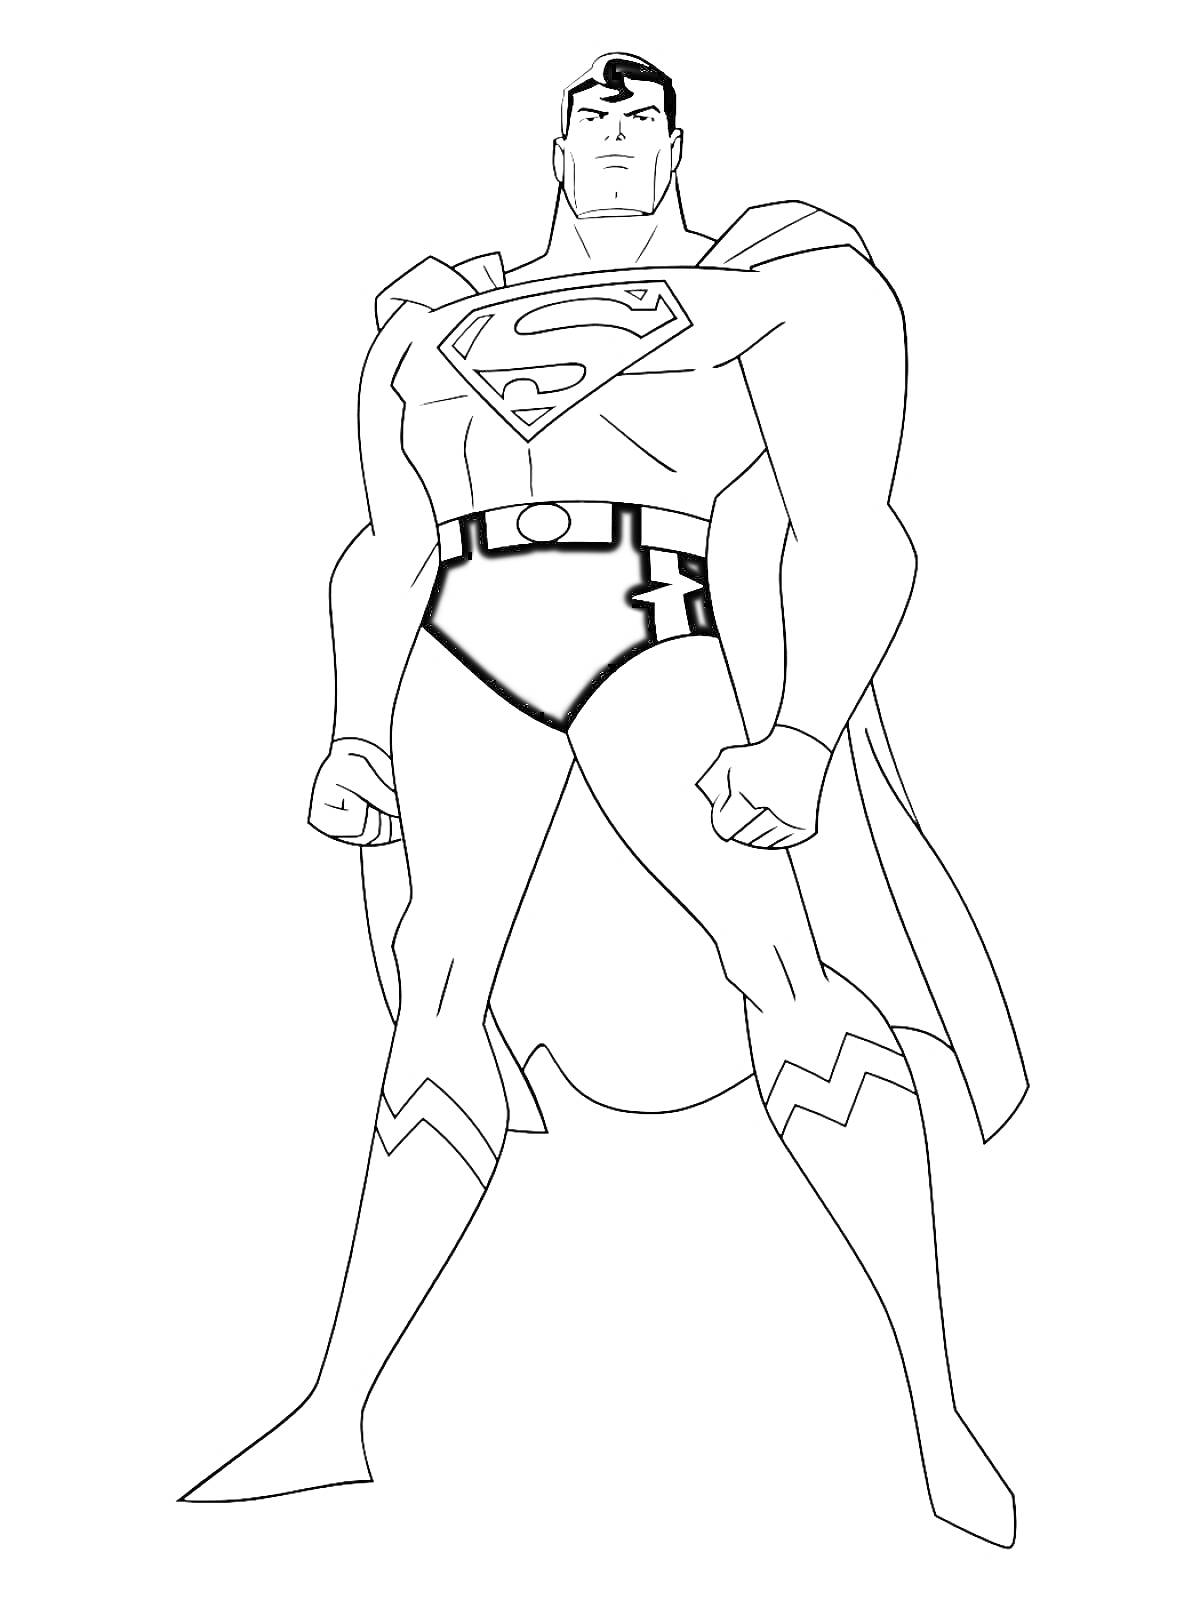 Супермен - Лига Справедливости. Человек в супергеройском костюме с буквой 